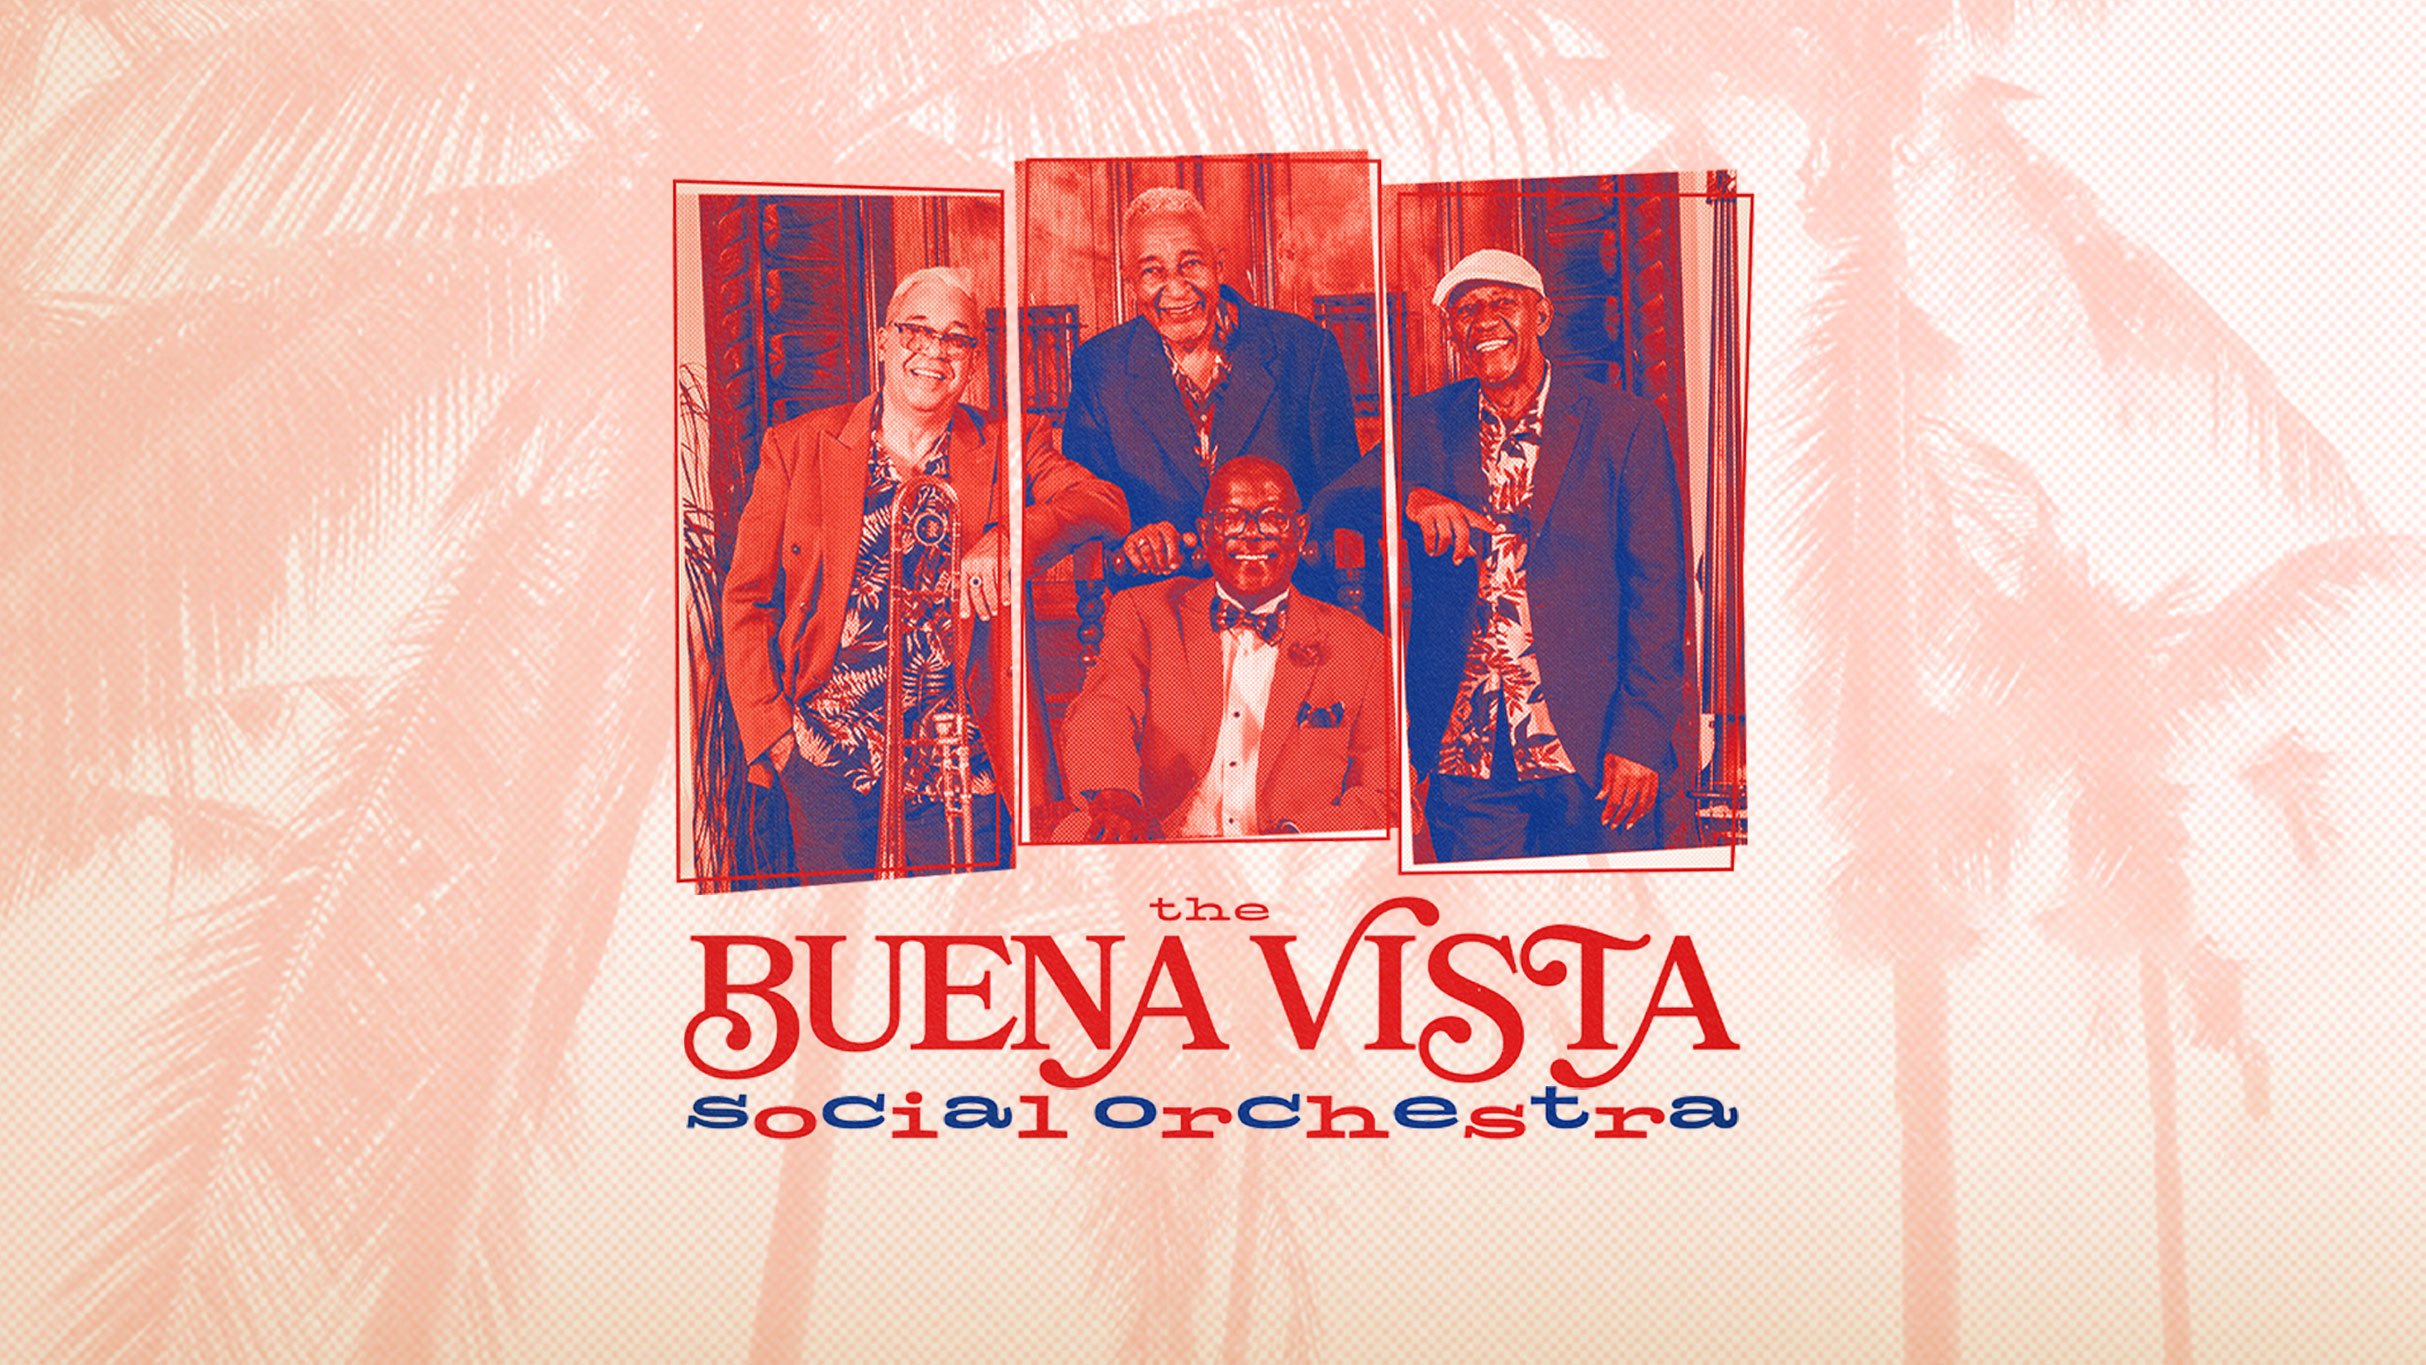 LPR Presents: The Buena Vista Social Orchestra